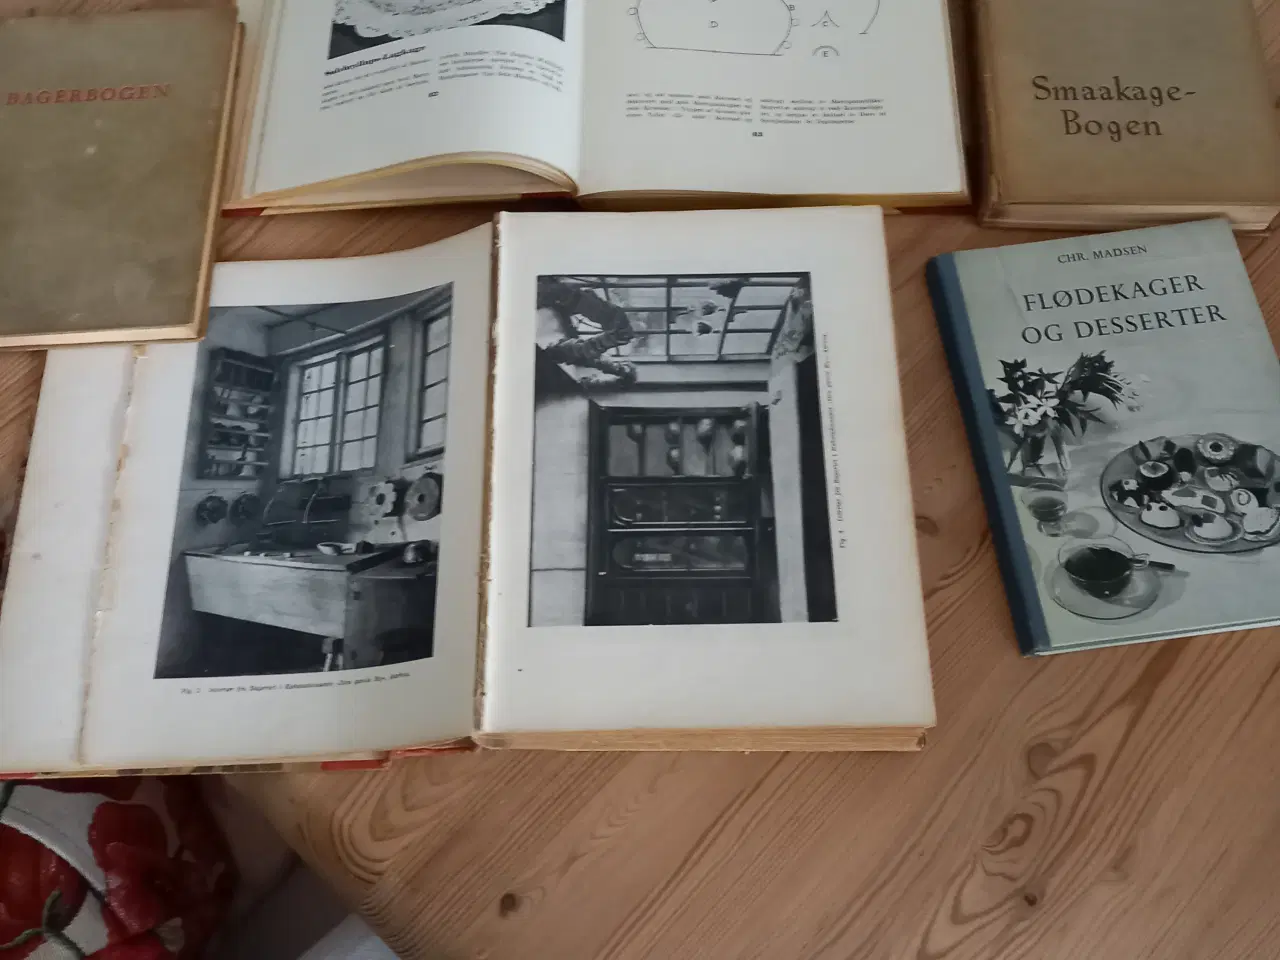 Billede 2 - Antikke bagebøger med historier og opskrifter. 